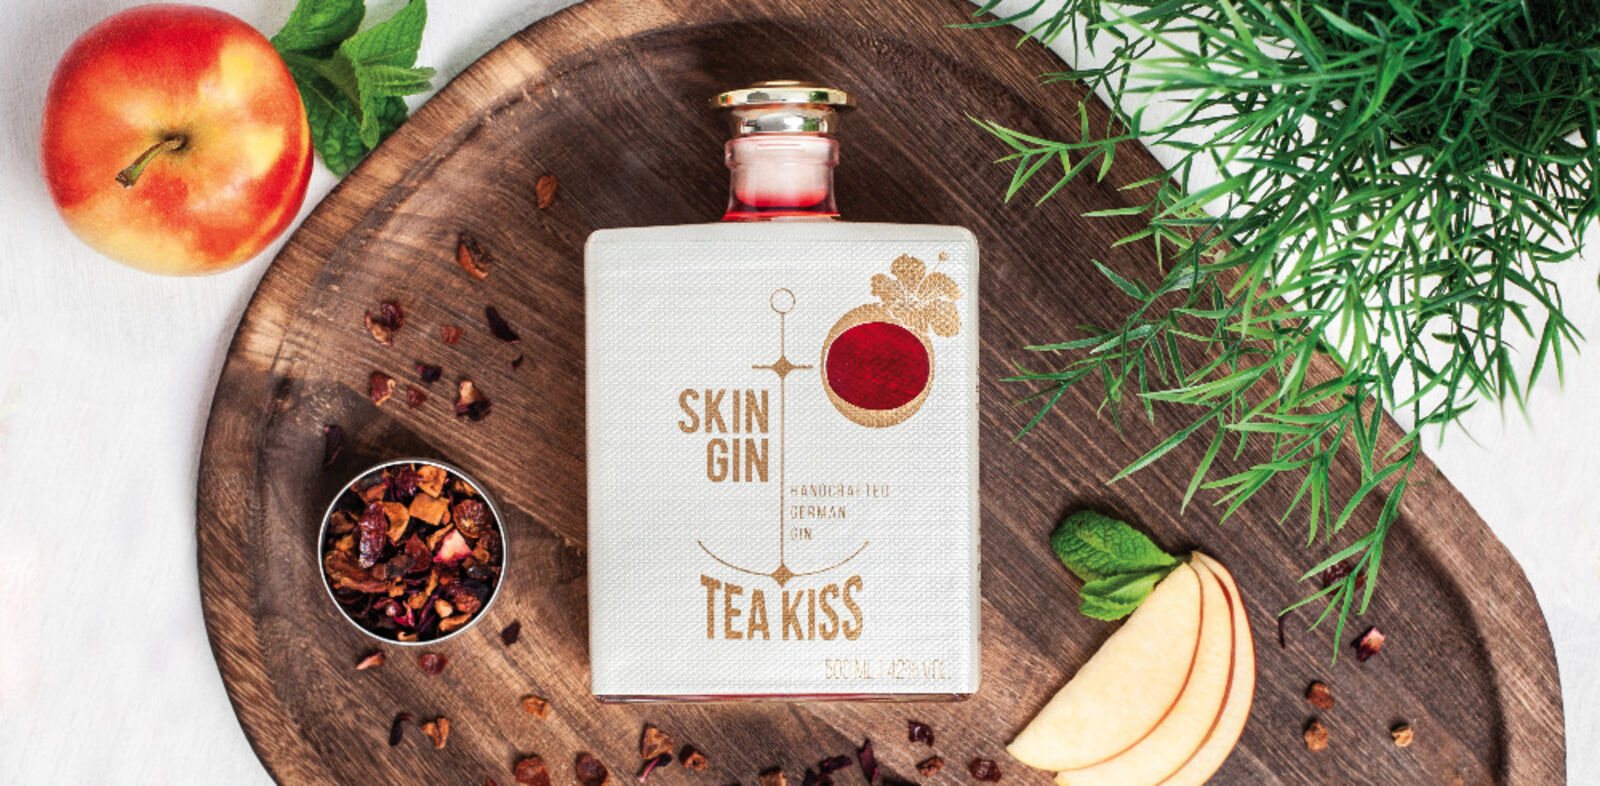 Skin Gins neues Produkt im neuen Design